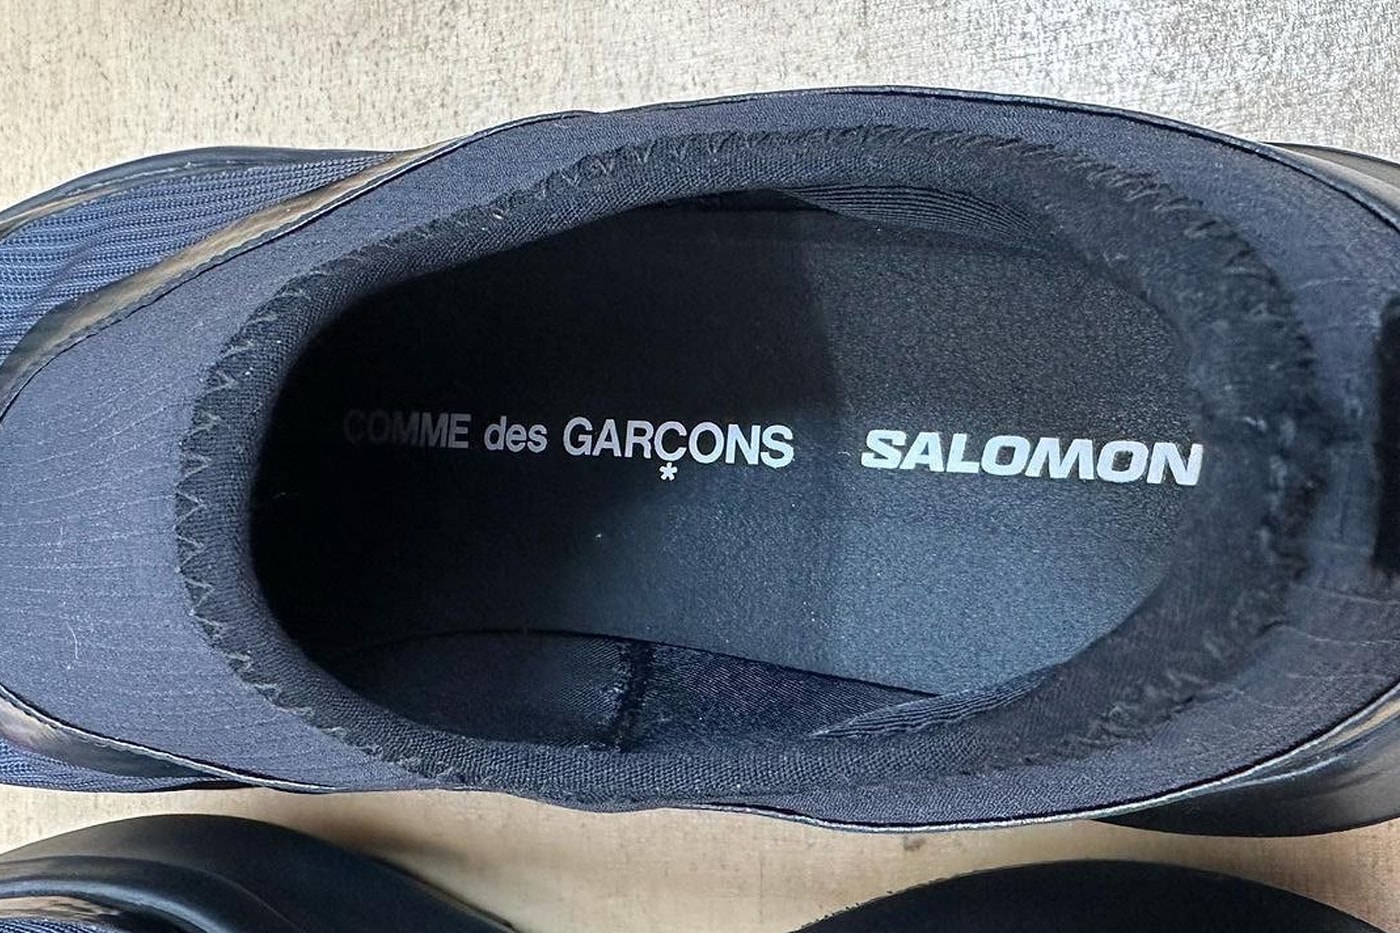 COMME des GARÇONS Salomon footwear shoes sneaker white black